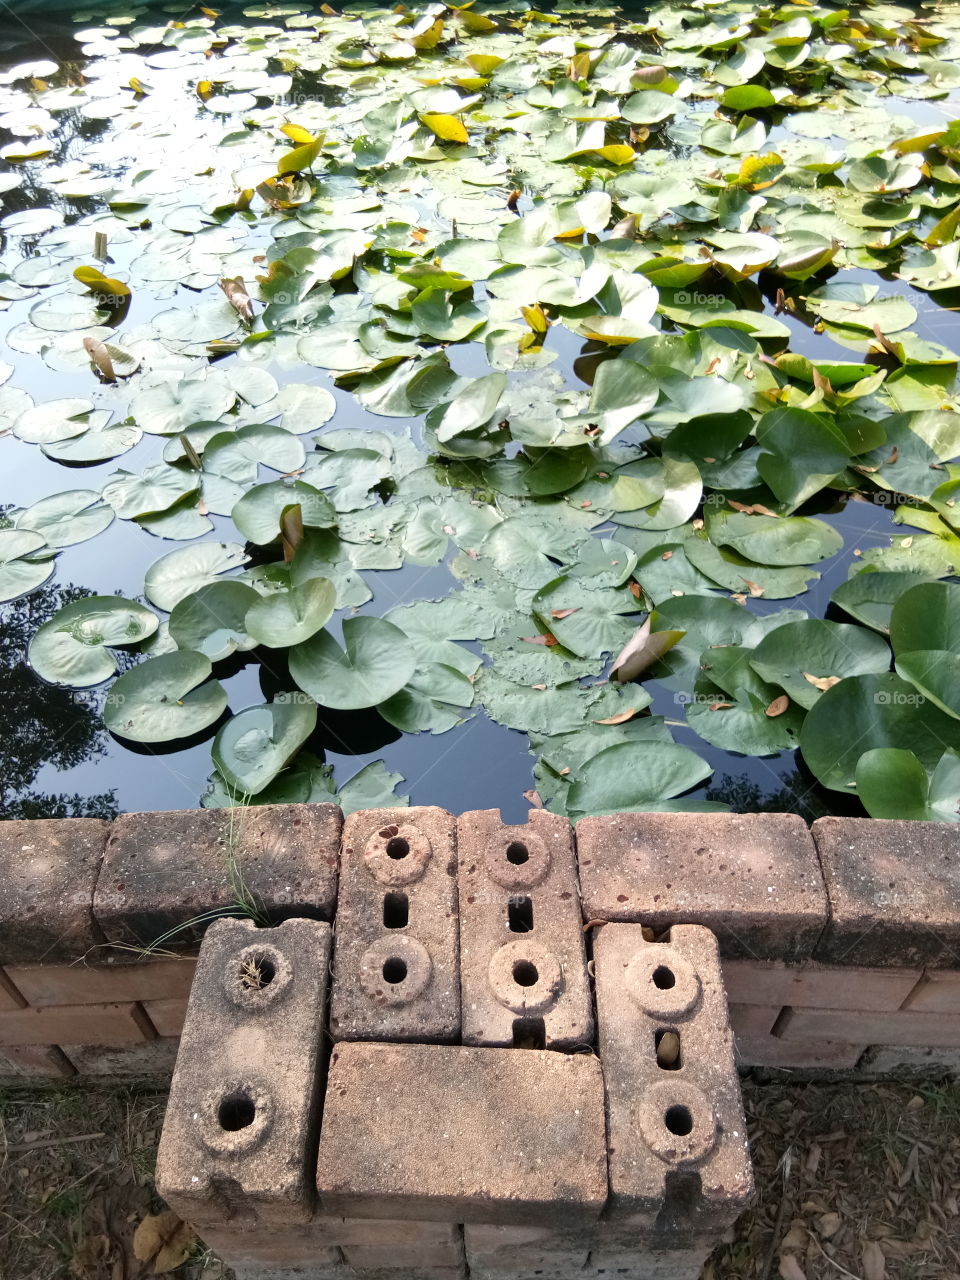 pool
lotus
anticque